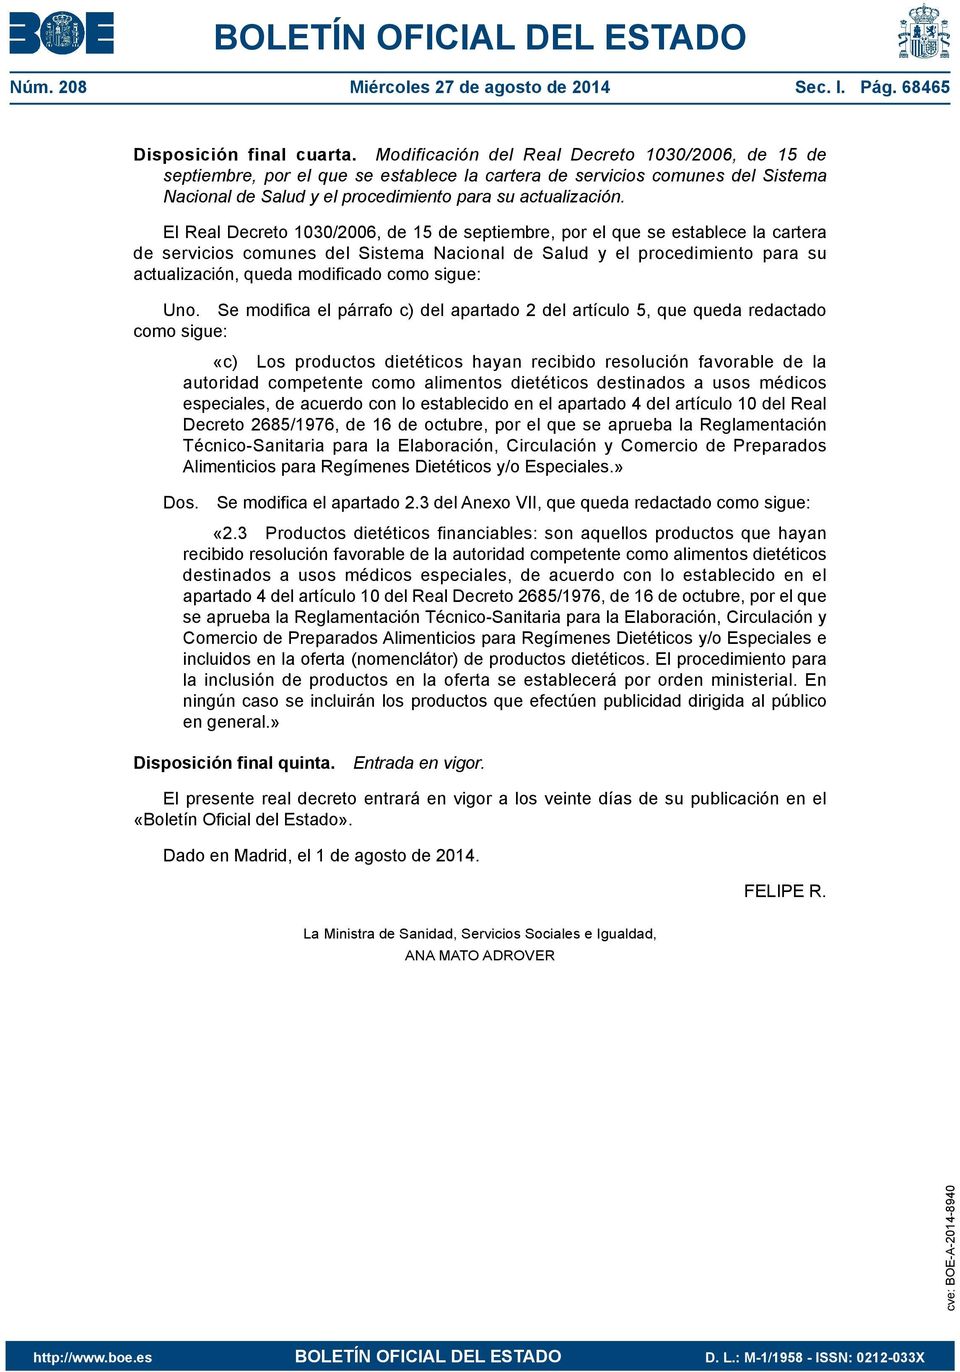 El Real Decreto 1030/2006, de 15 de septiembre, por el que se establece la cartera de servicios comunes del Sistema Nacional de Salud y el procedimiento para su actualización, queda modificado Uno.